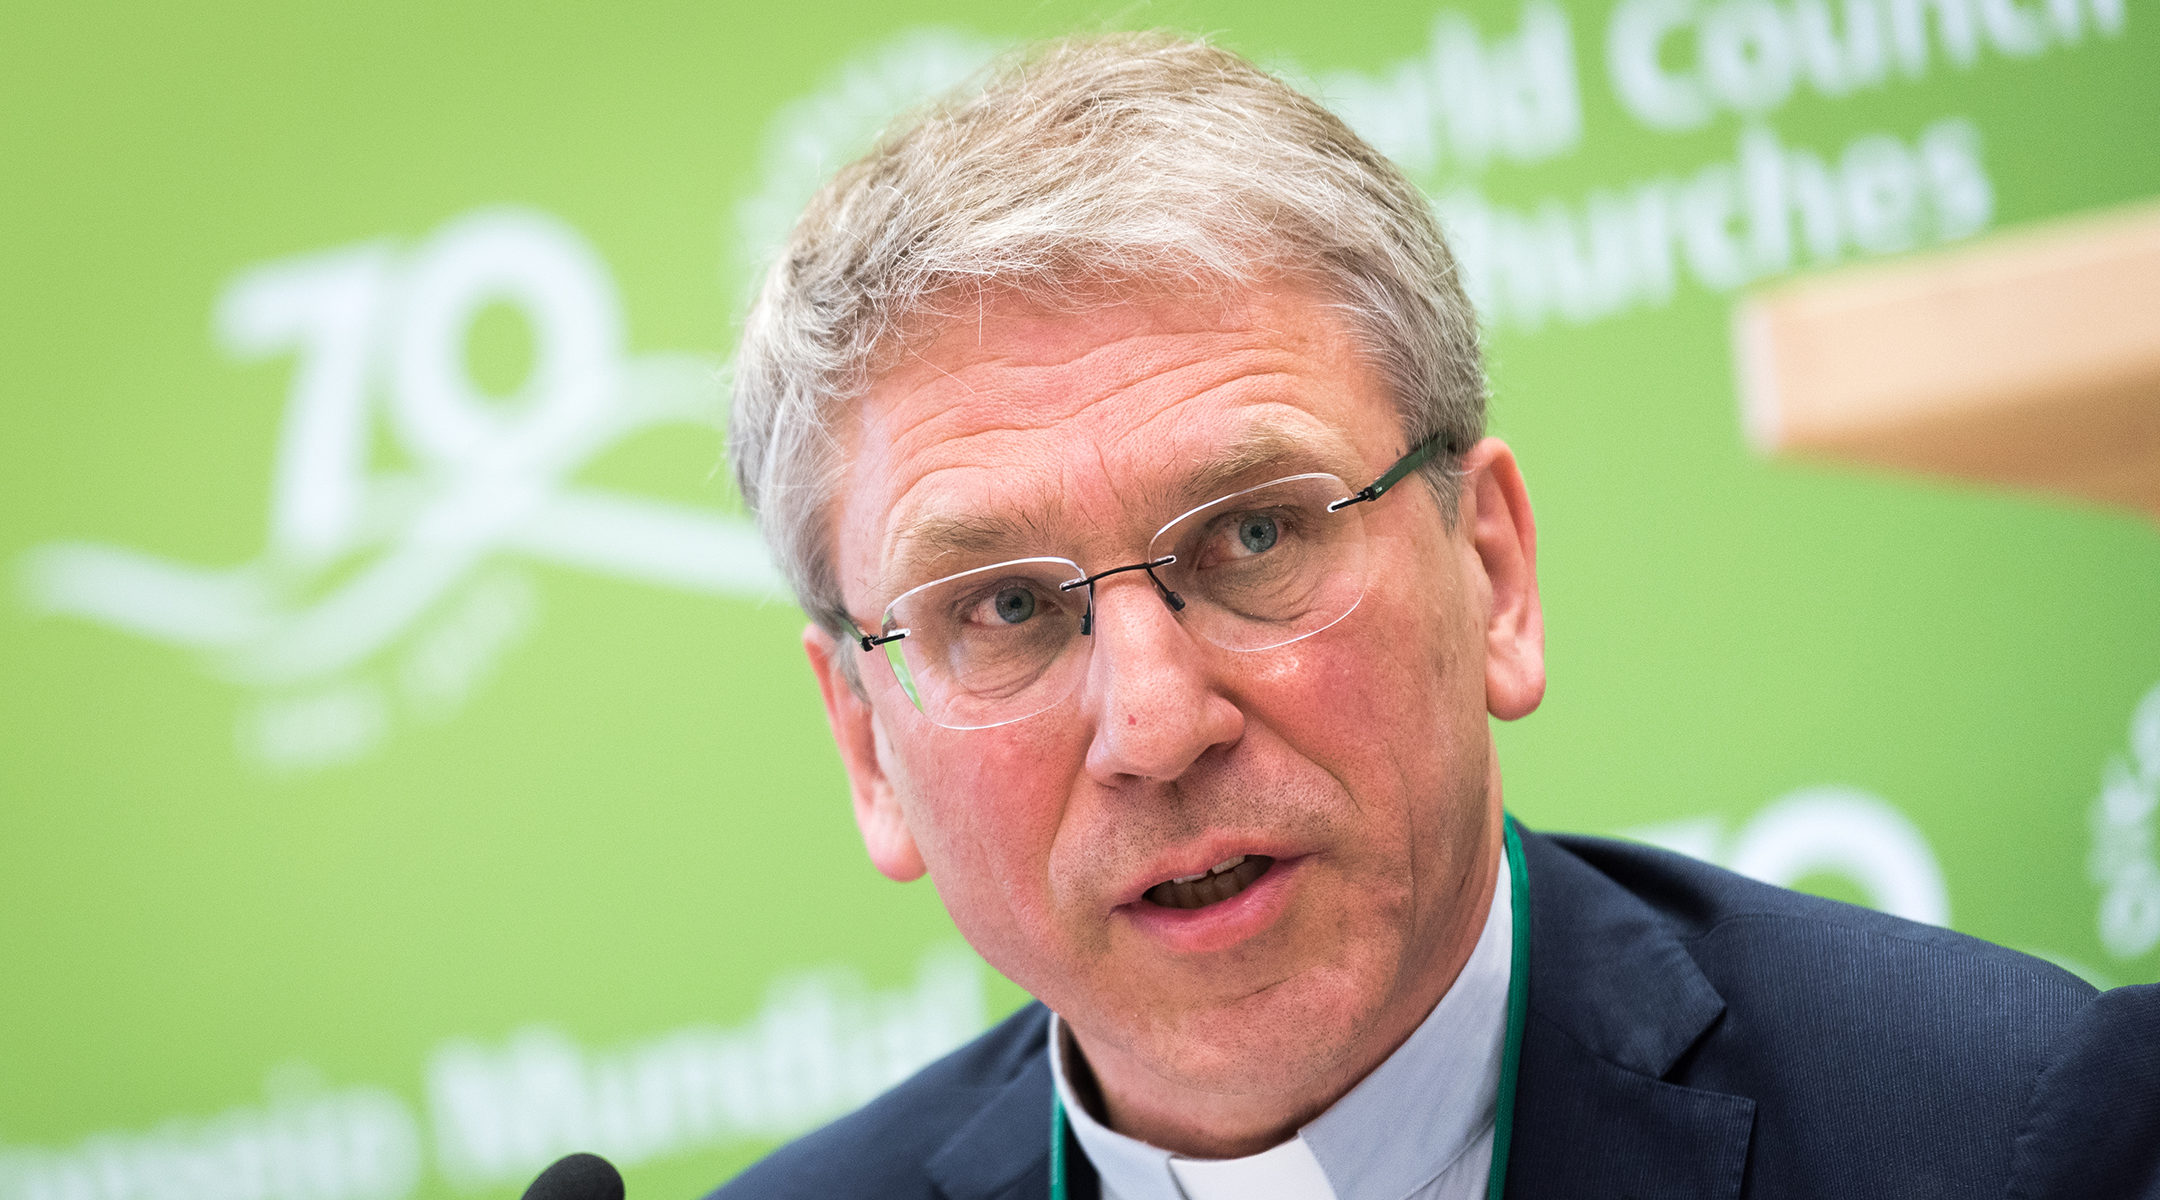 Rev. Dr Olav Fykse Tveit, general secretary of the World Council of Churches, speaks at an event in Geneva, Switzerland on June 15, 2018. (Albin Hillert/WCC)